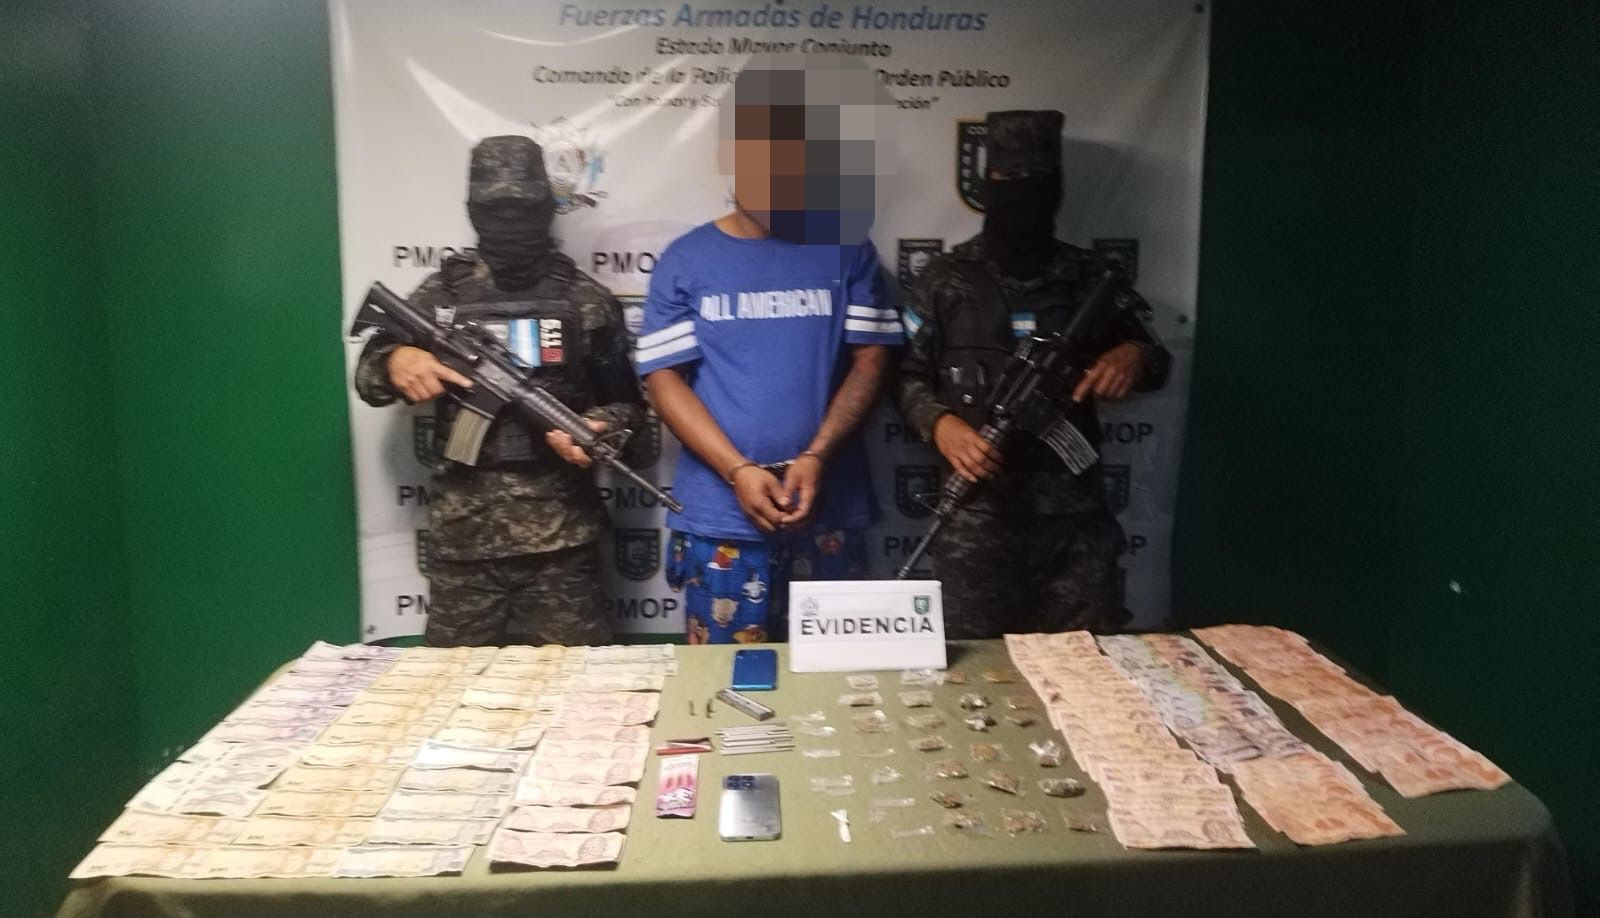 La PMOP detiene en Tegucigalpa a hombre por suponerlo responsable de los delitos de tráfico de droga y tenencia ilegal de municiones de uso permitido